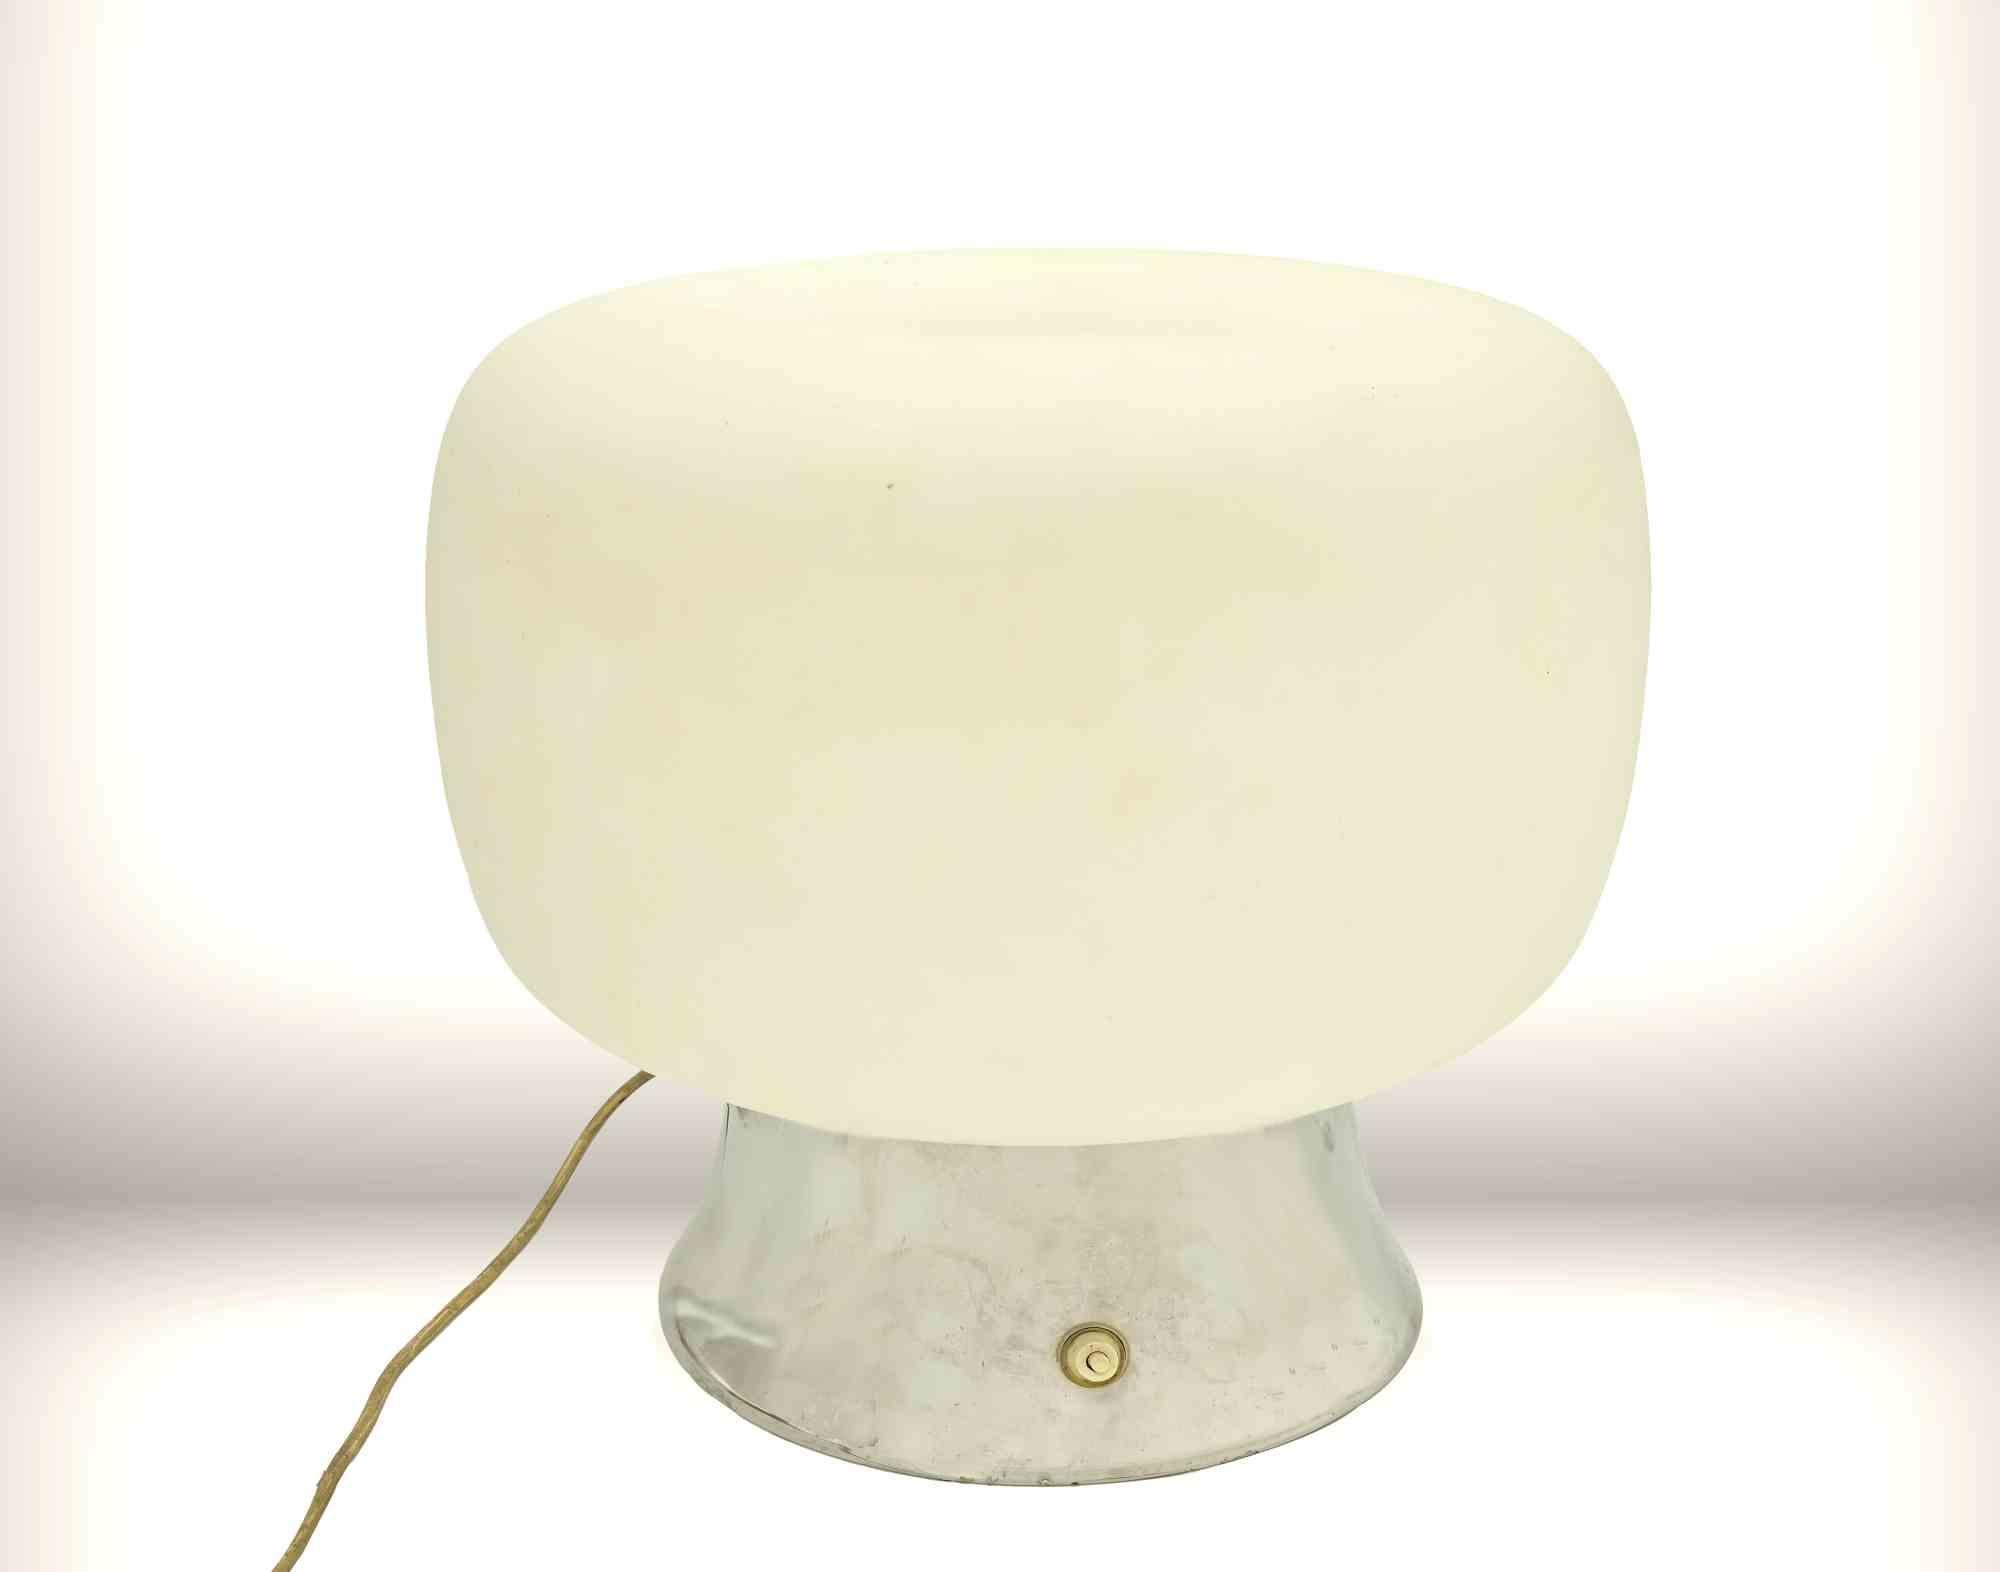 Lampe originale de l'ère spatiale, datant des années 1970. 

Lampe de travail avec base en étain et tête en verre.

Mesures : 36x35 cm.


